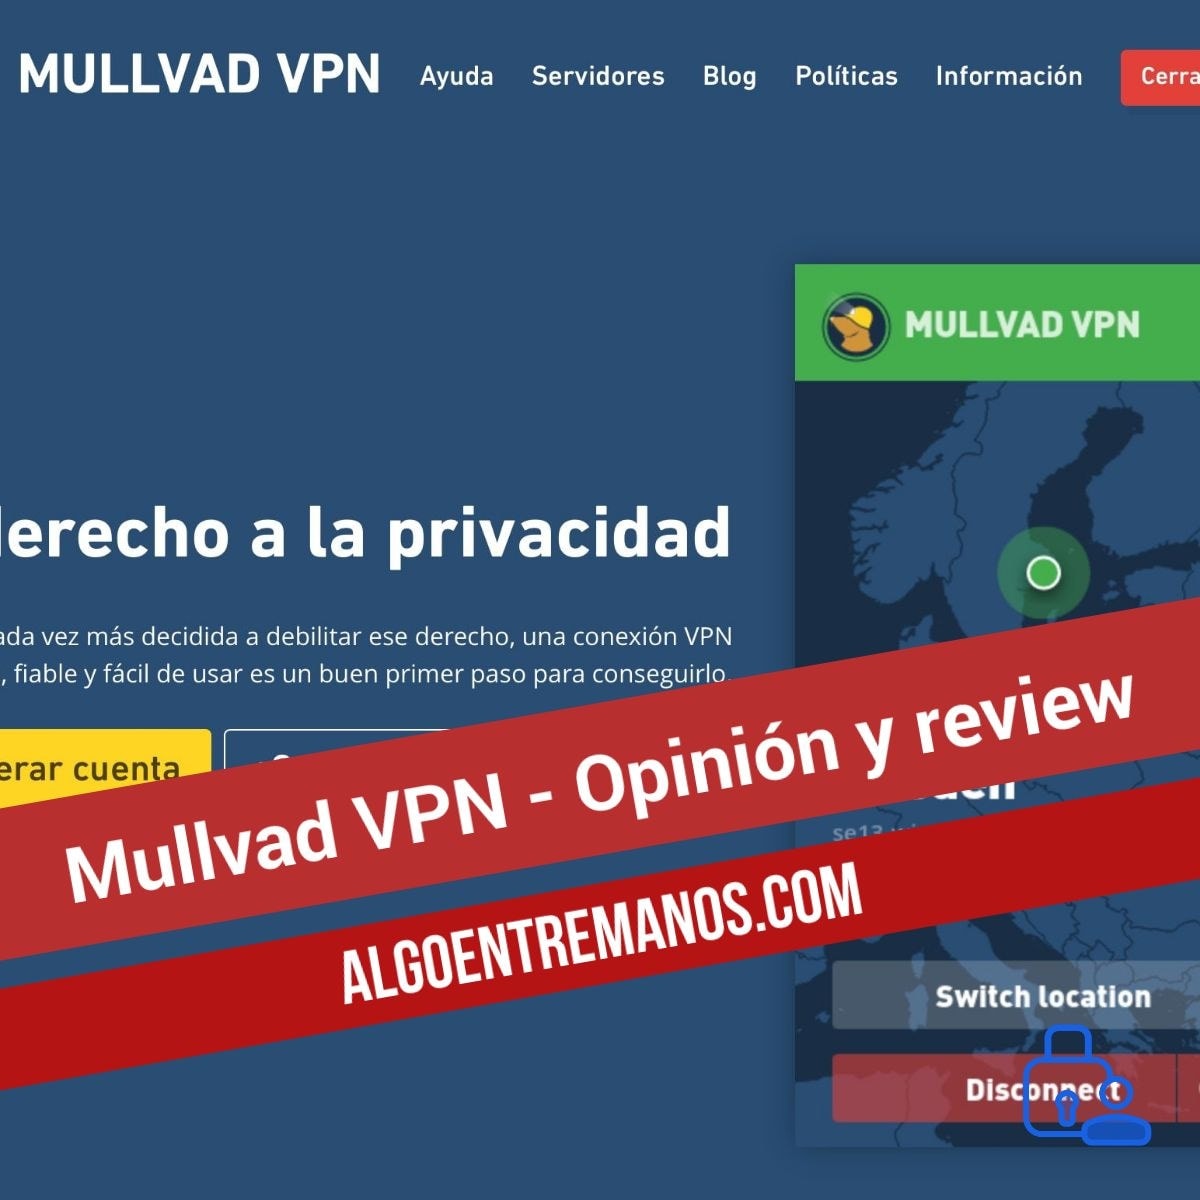 Mullvad VPN - Opinión y review